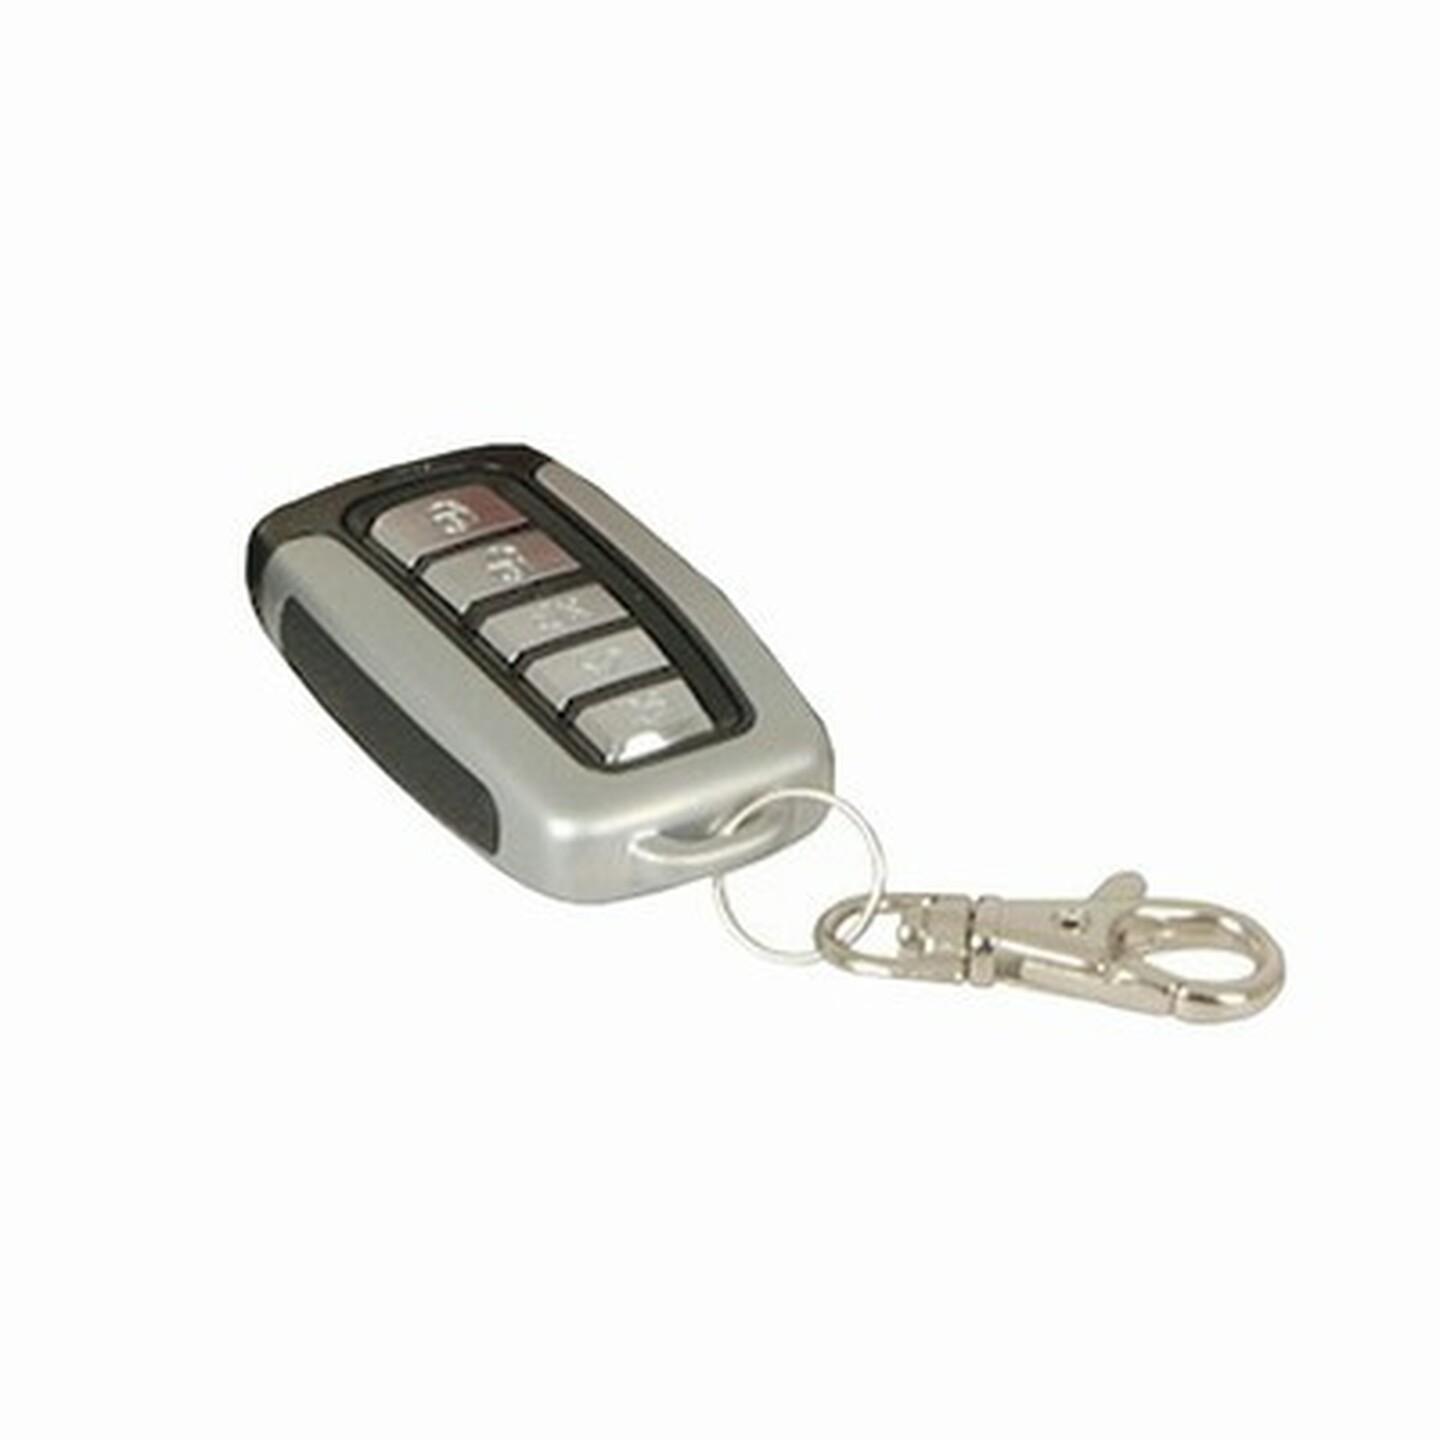 Spare Remote for Steelmate Car Alarm LA-9003